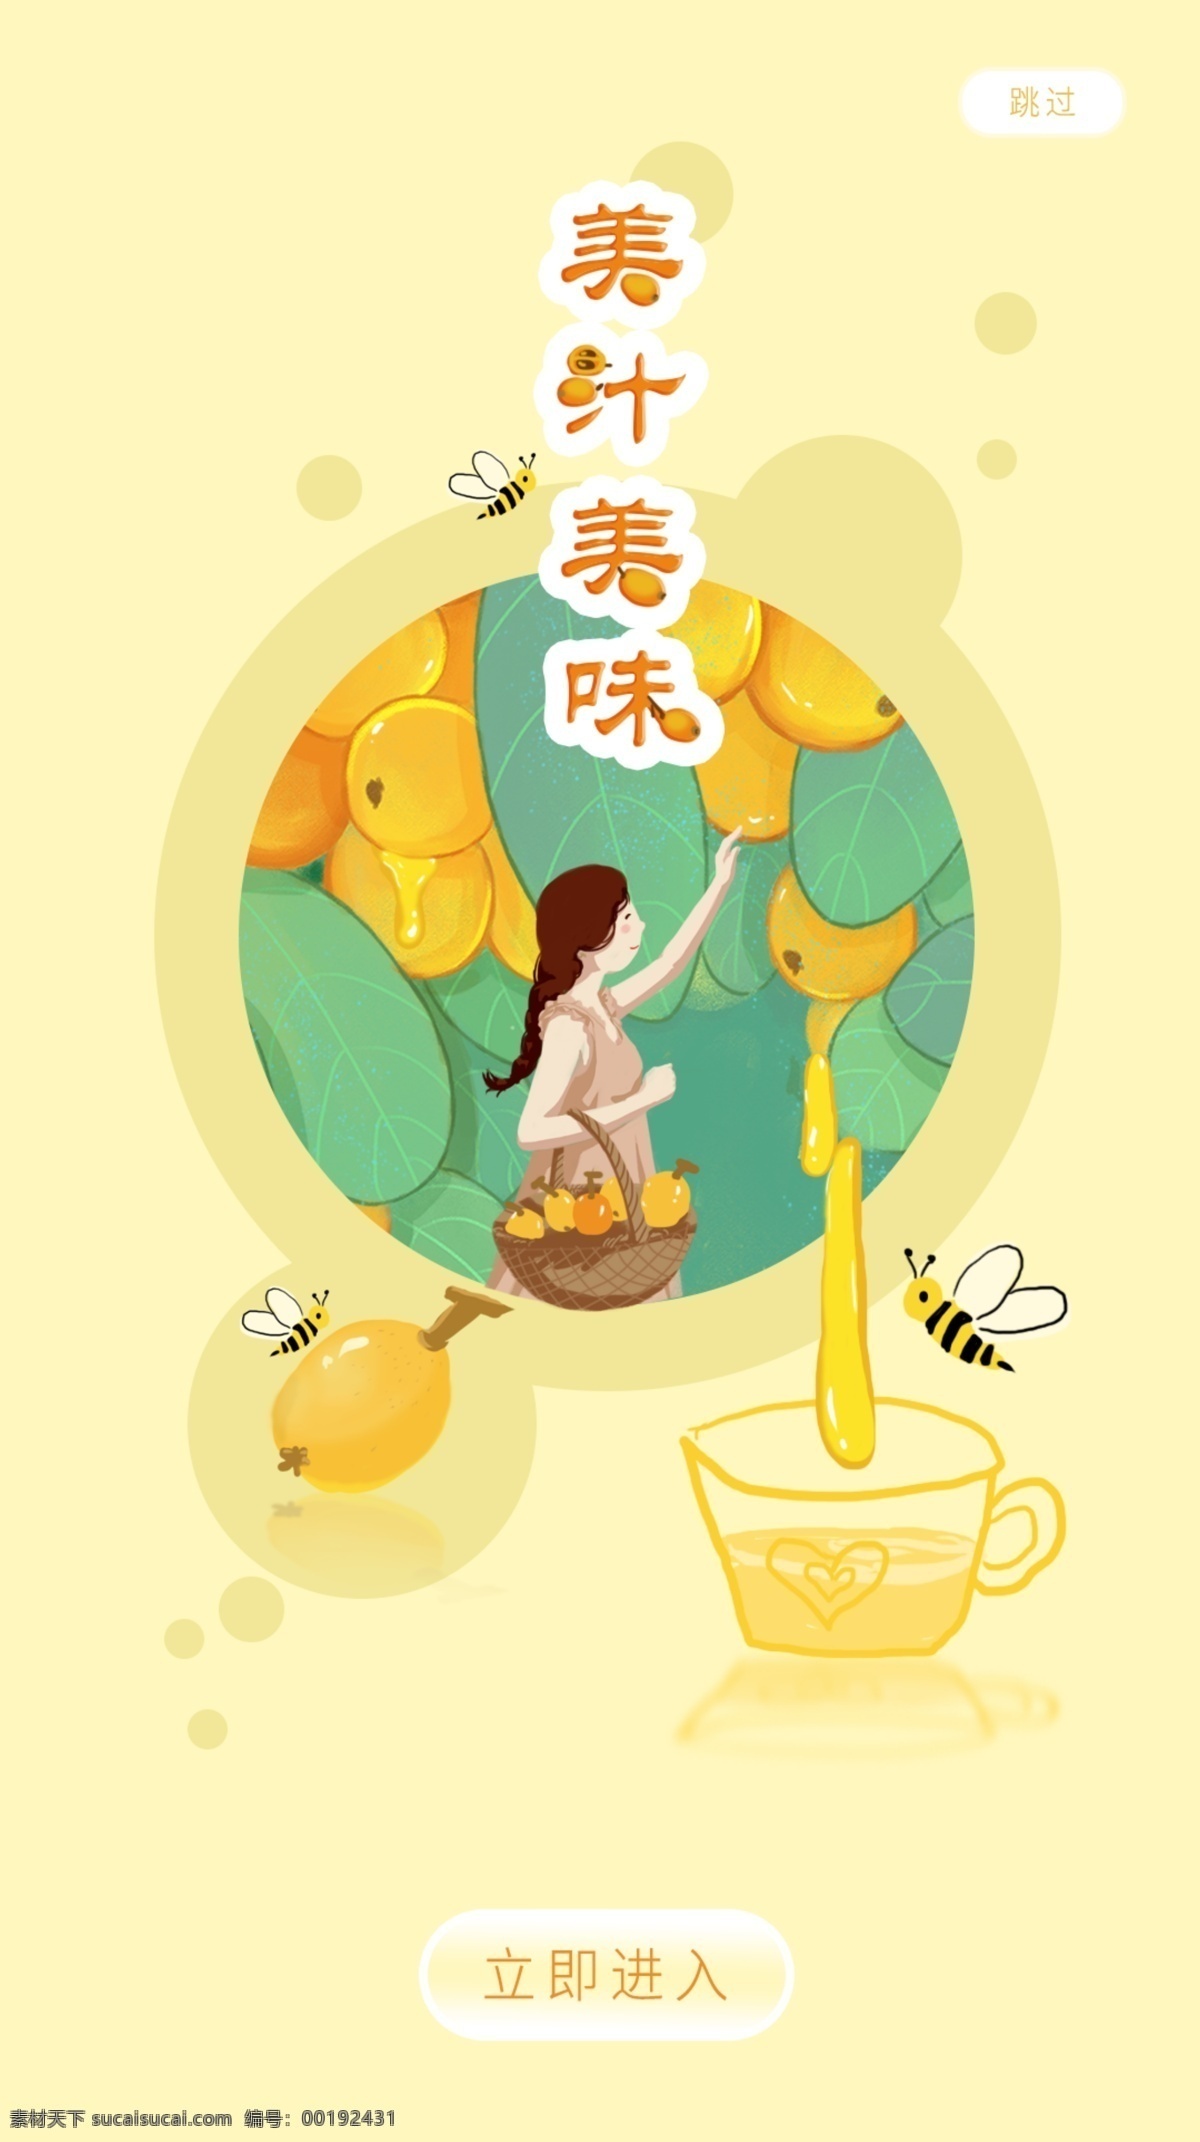 新鲜 美 汁 美味 水果 启动 页 启动页 果汁 蜜蜂 蜂蜜 枇杷 果酱 甜蜜蜜 app